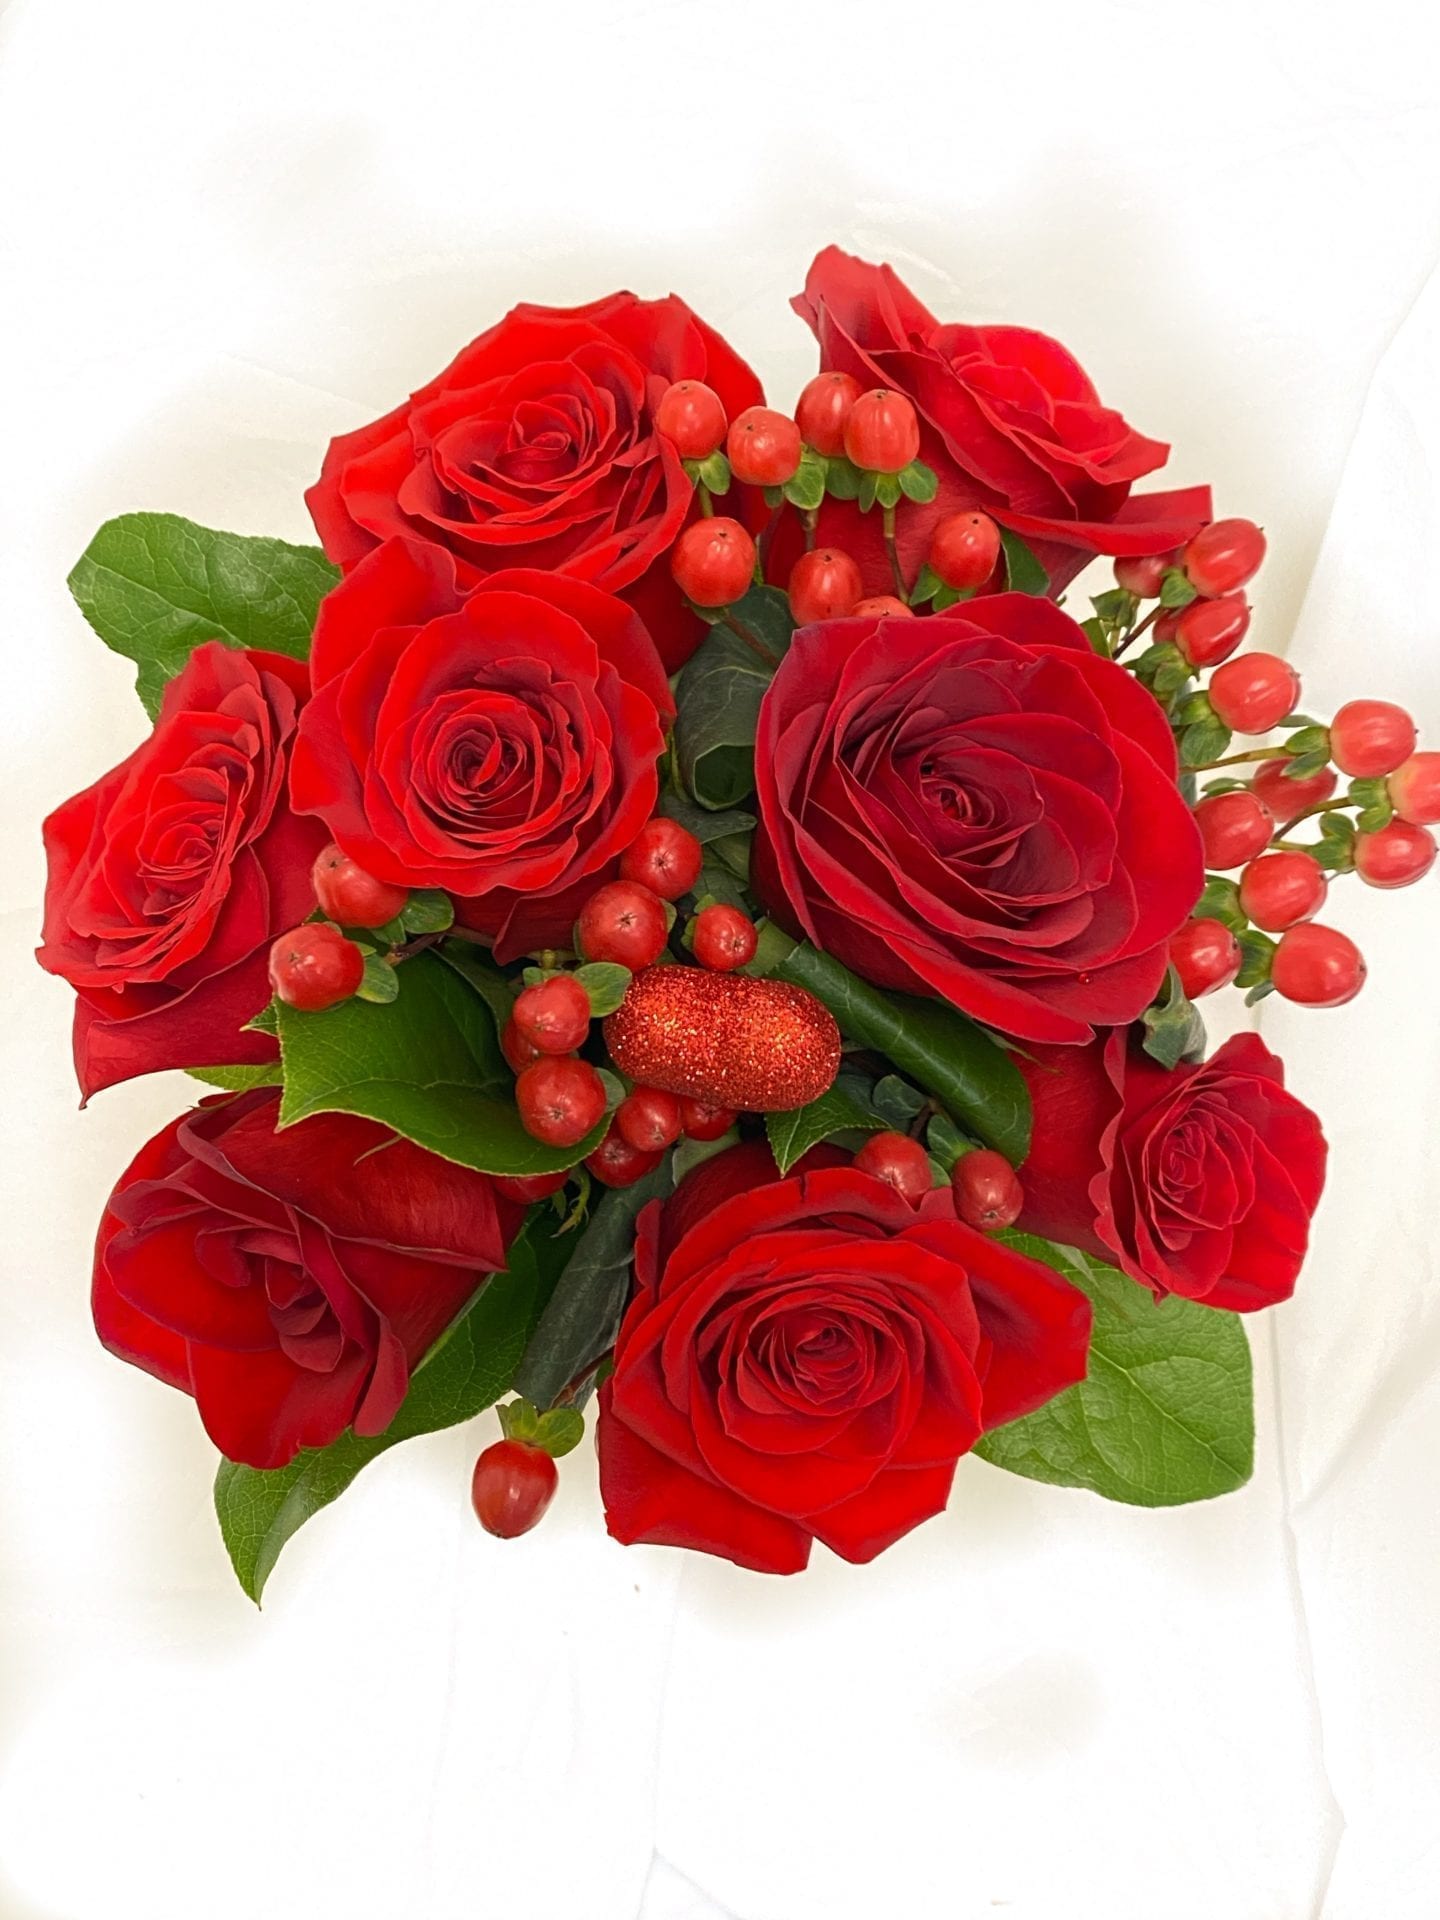 Roses and Berries - Flor Bella Designs